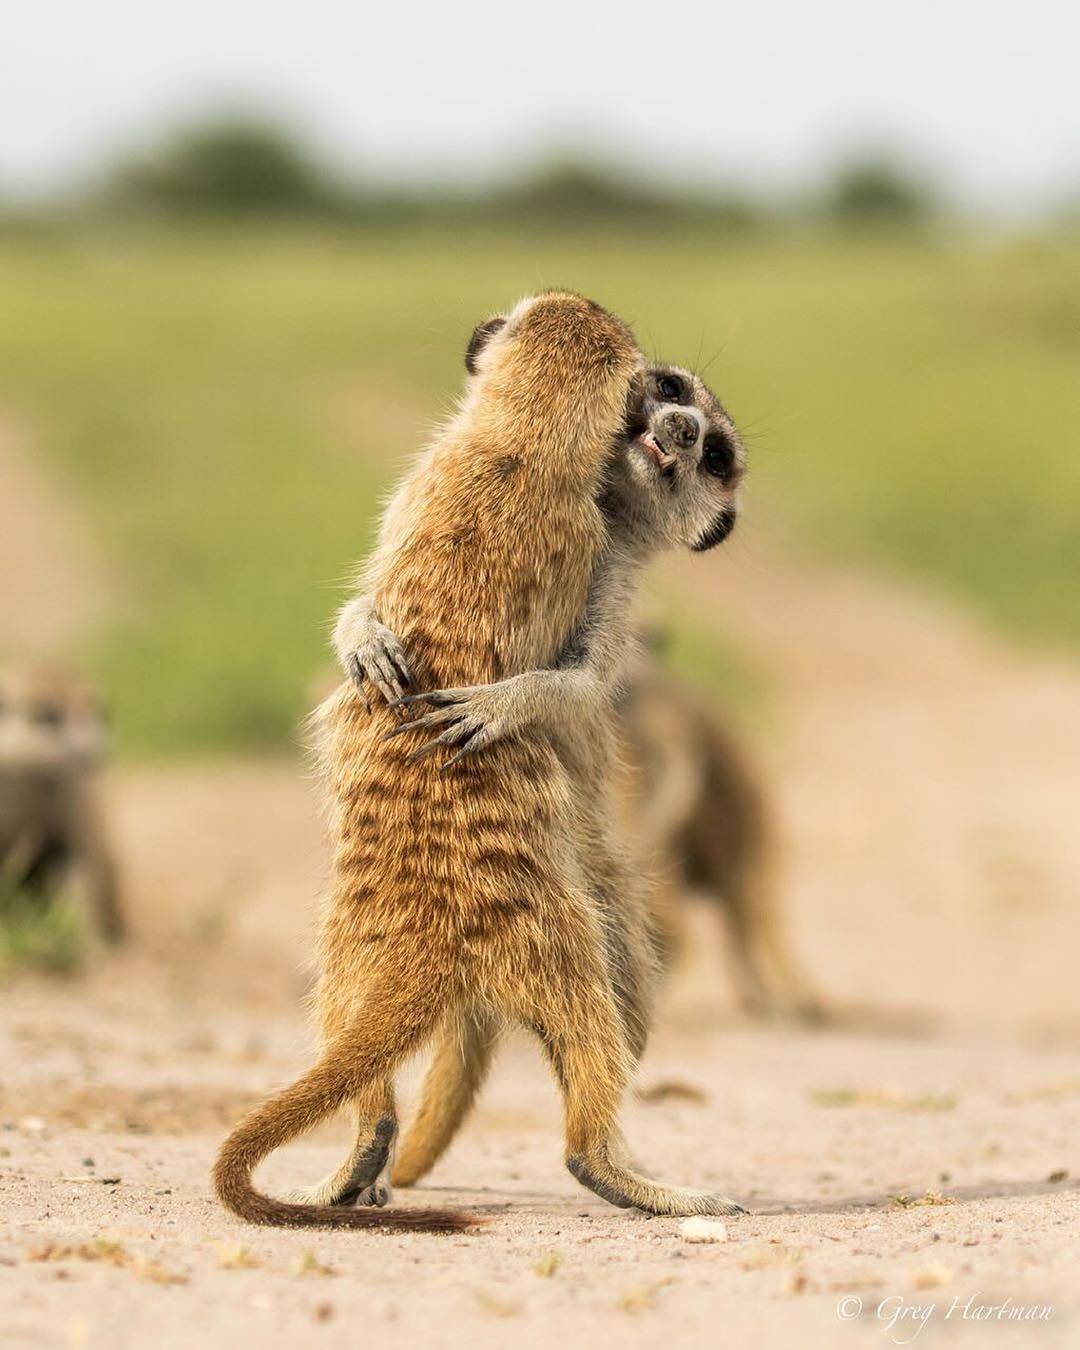  两只玩耍的狐蒙，Greg Hartman摄于博茨瓦纳喀拉哈里沙漠。 